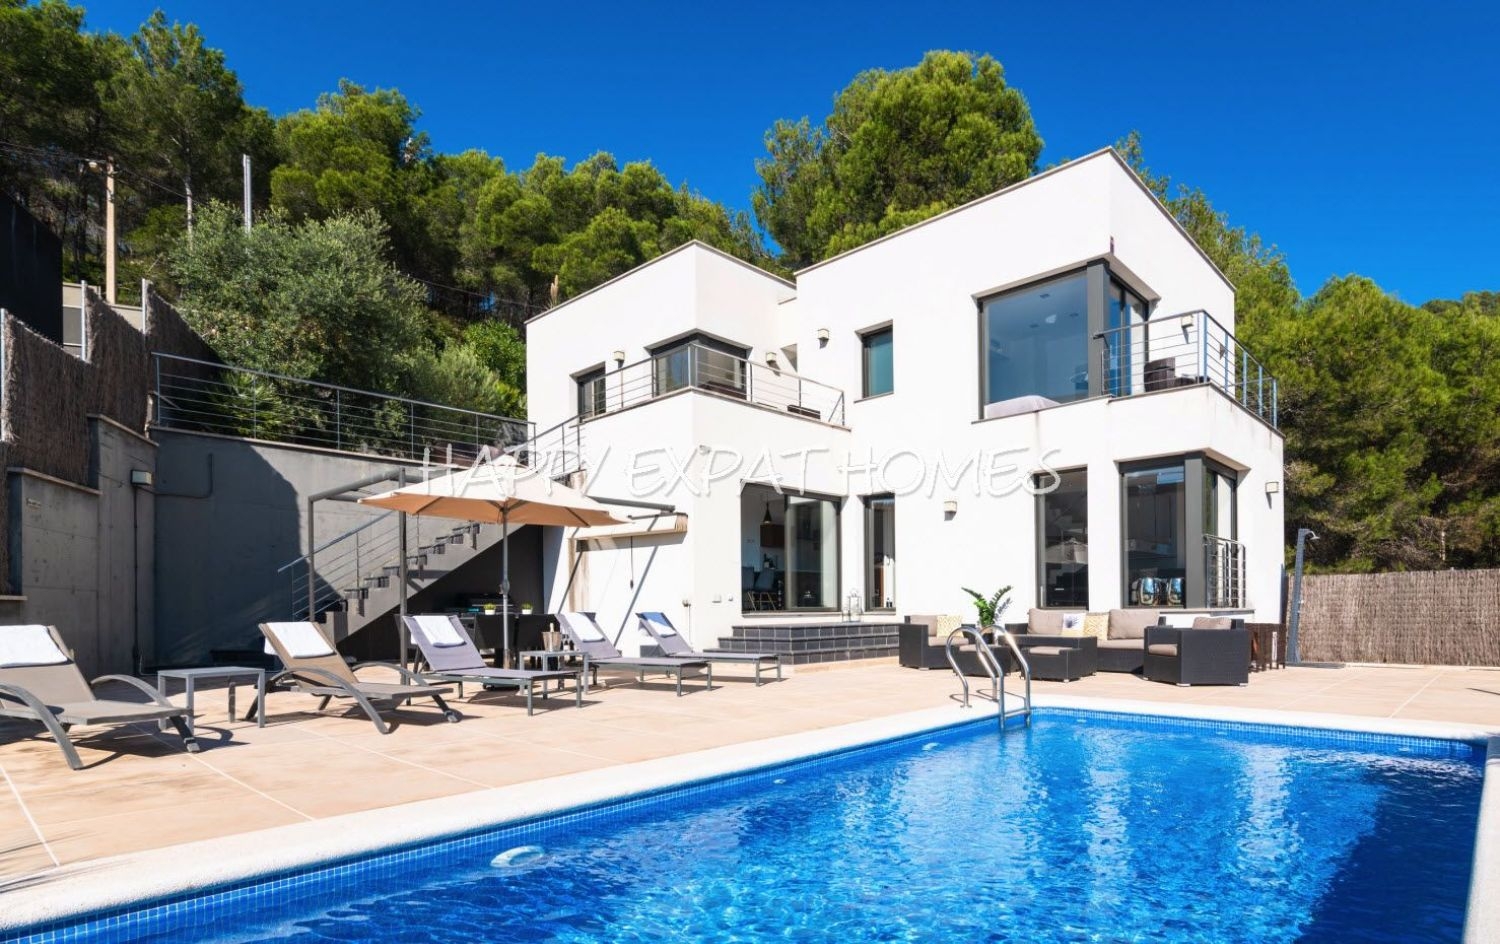 Modern design villa with the best views